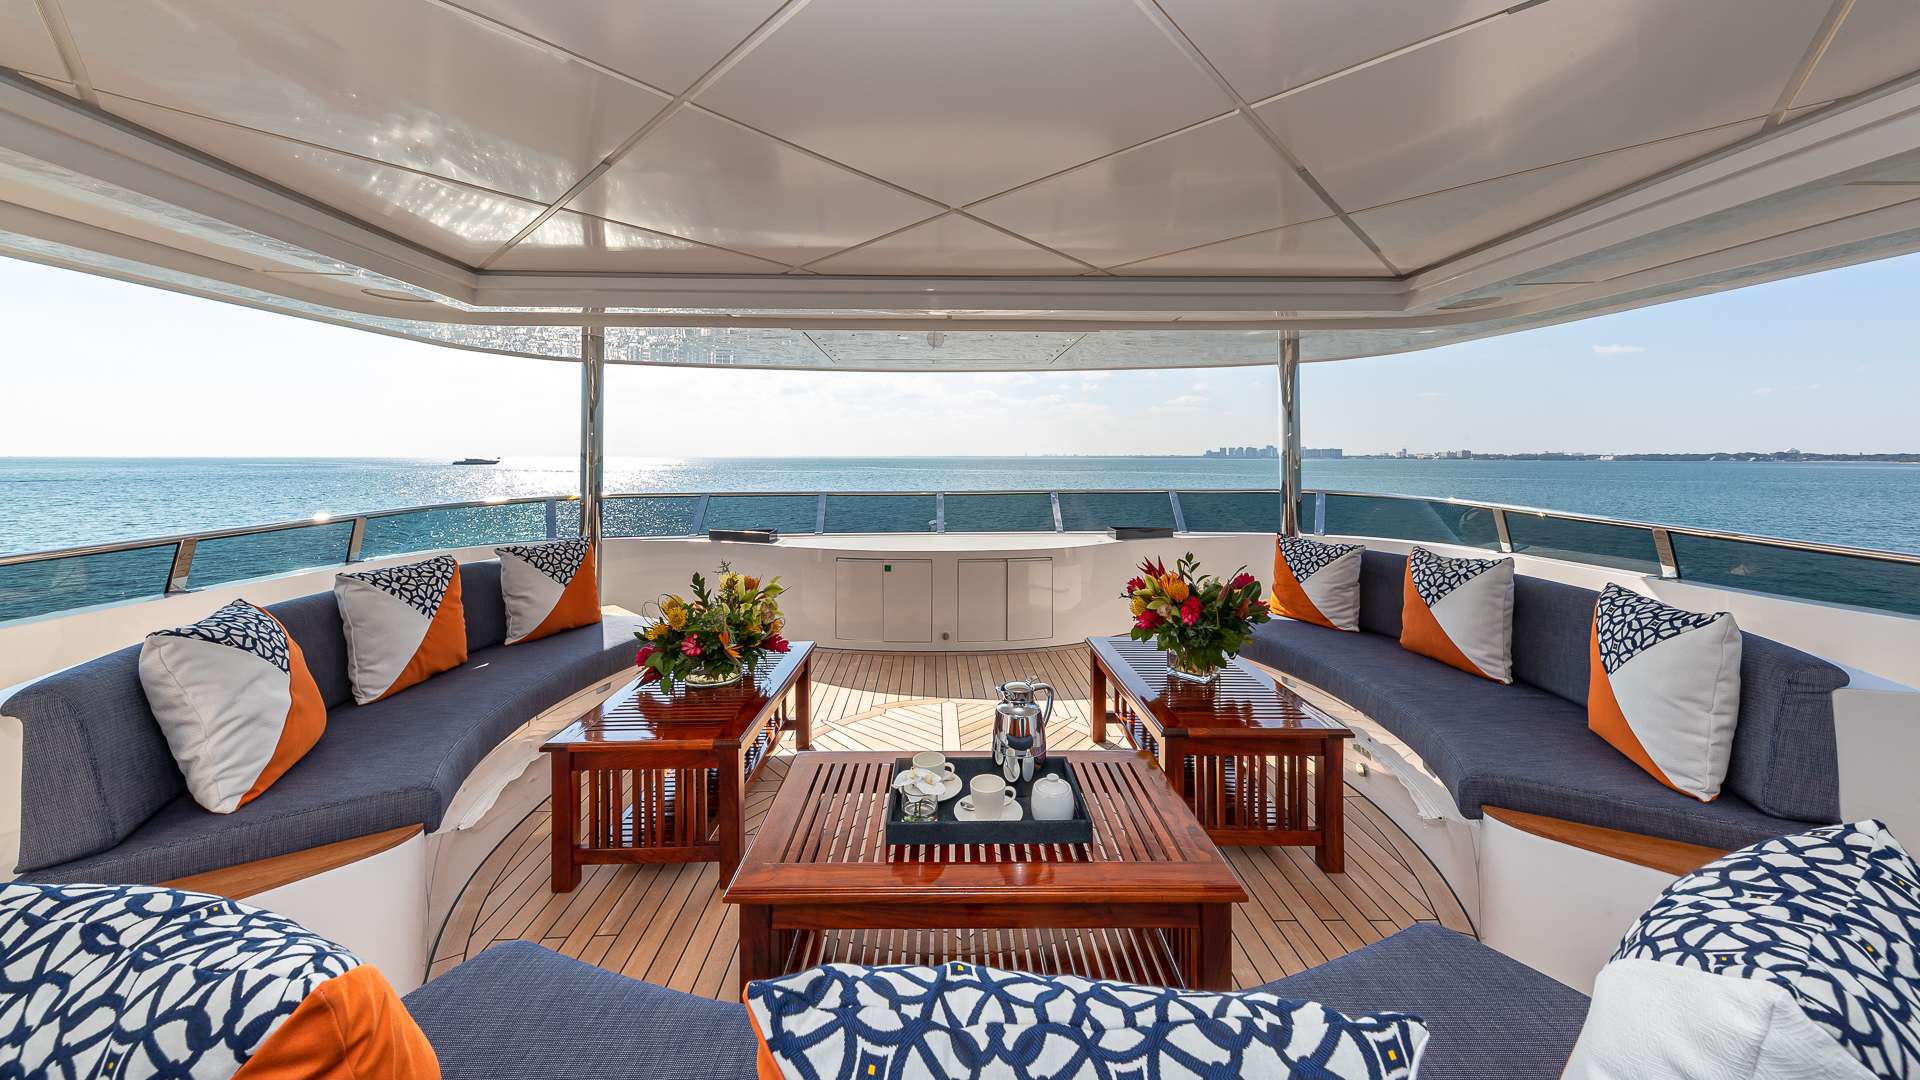 RISING DAWN Yacht Charter - Sun Deck